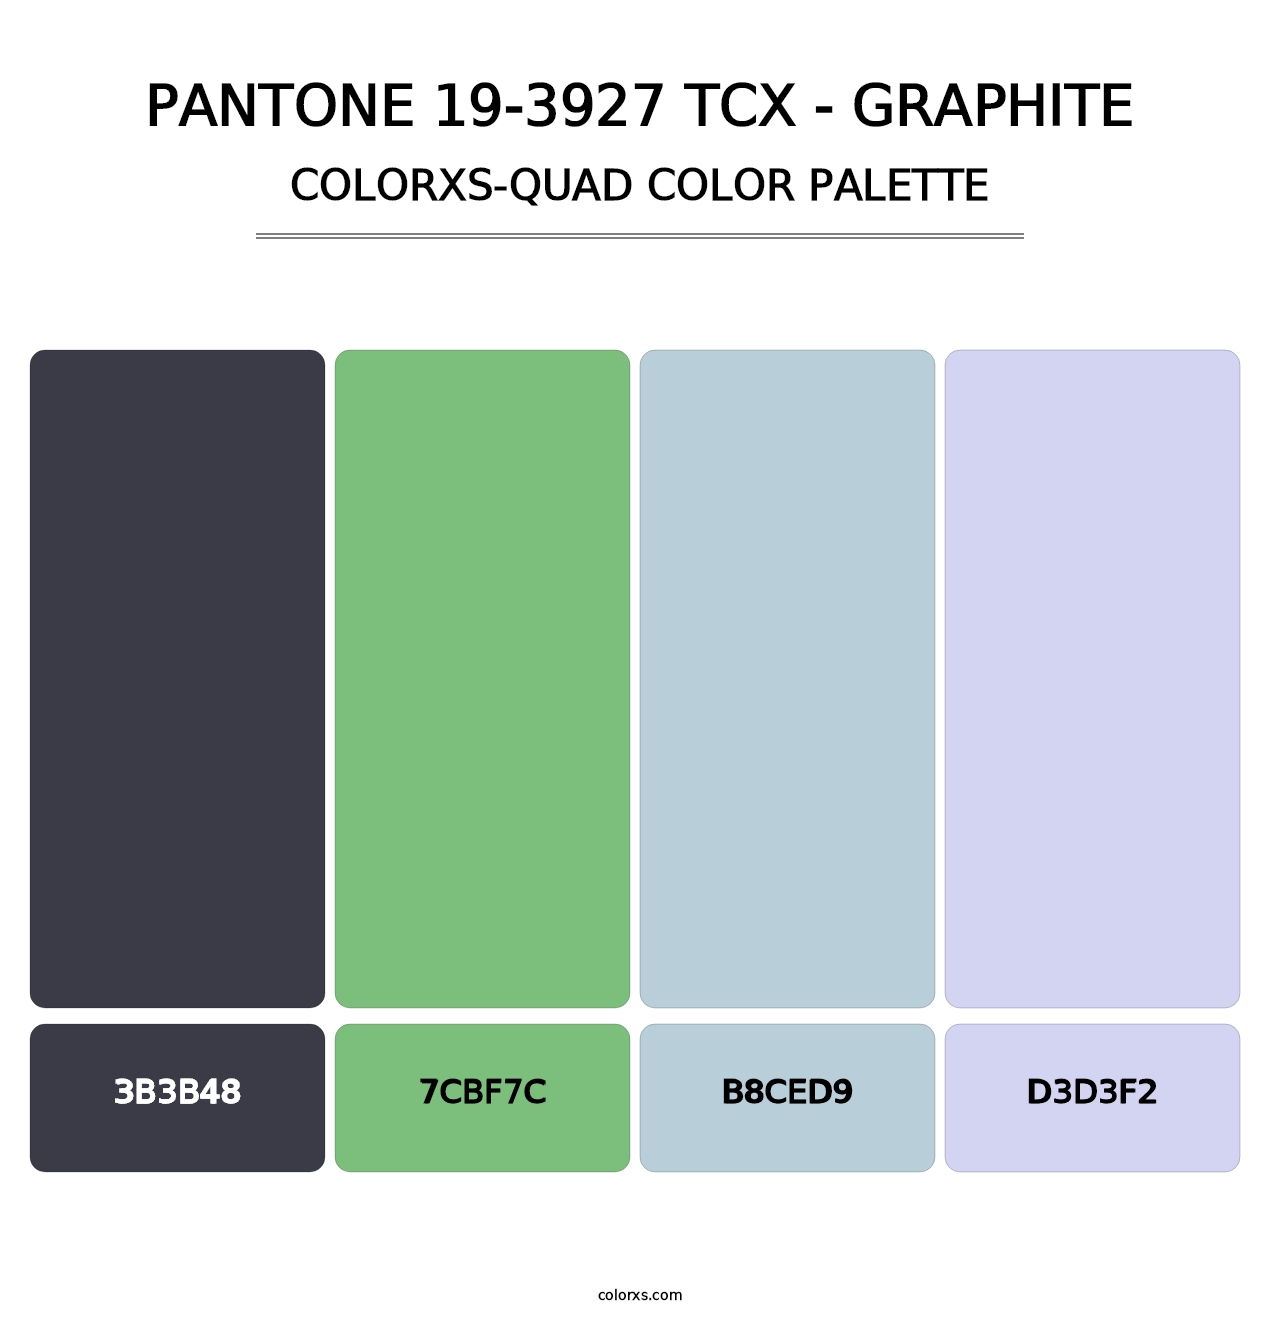 PANTONE 19-3927 TCX - Graphite - Colorxs Quad Palette